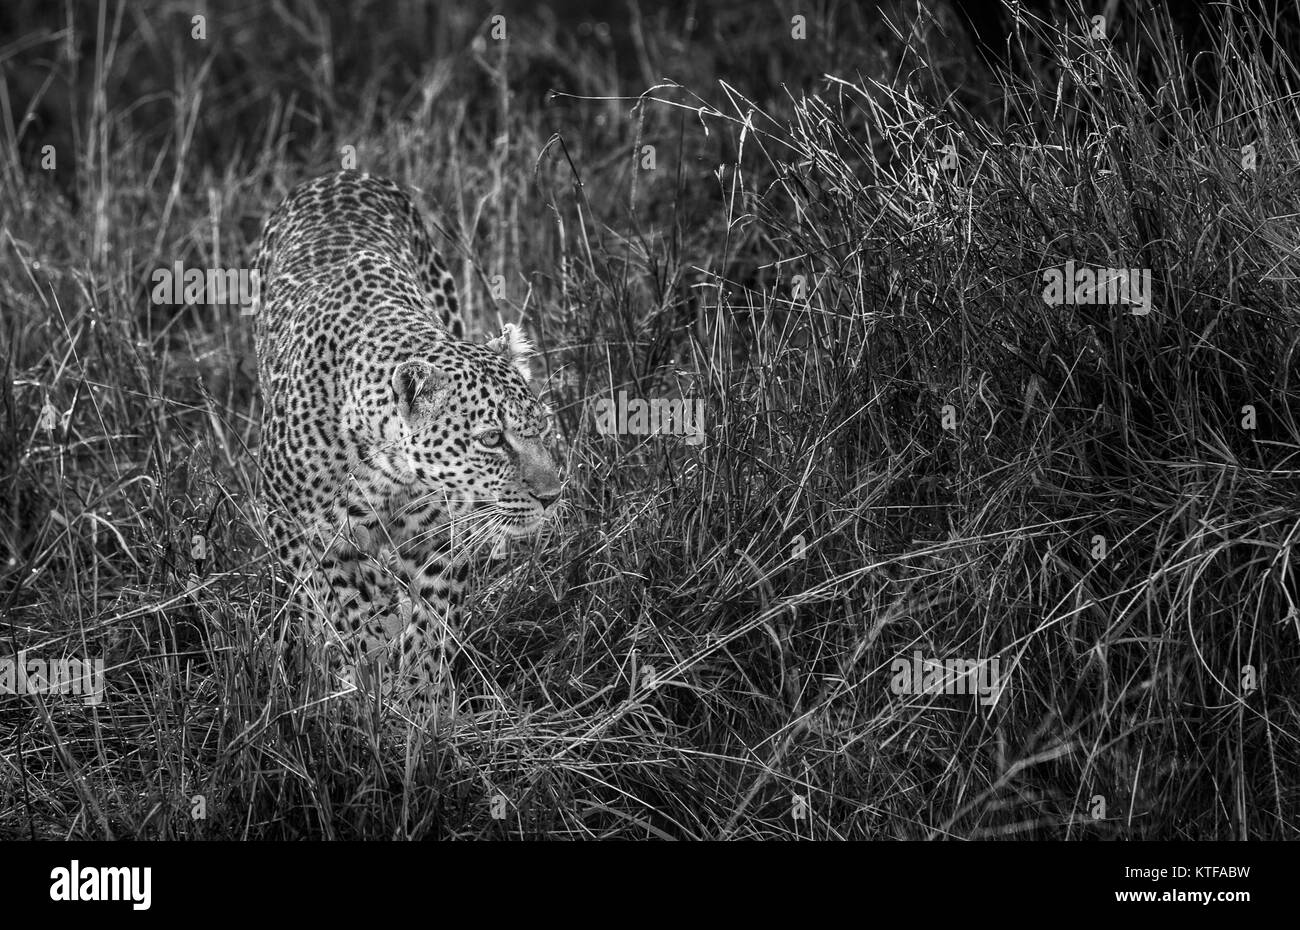 Erwachsene Frau Leopard (Panthera pardus) Herumstreichen in langen Gras, von Ihrem gefleckten Fell getarnt Verstecken, Masai Mara, Kenia Stockfoto